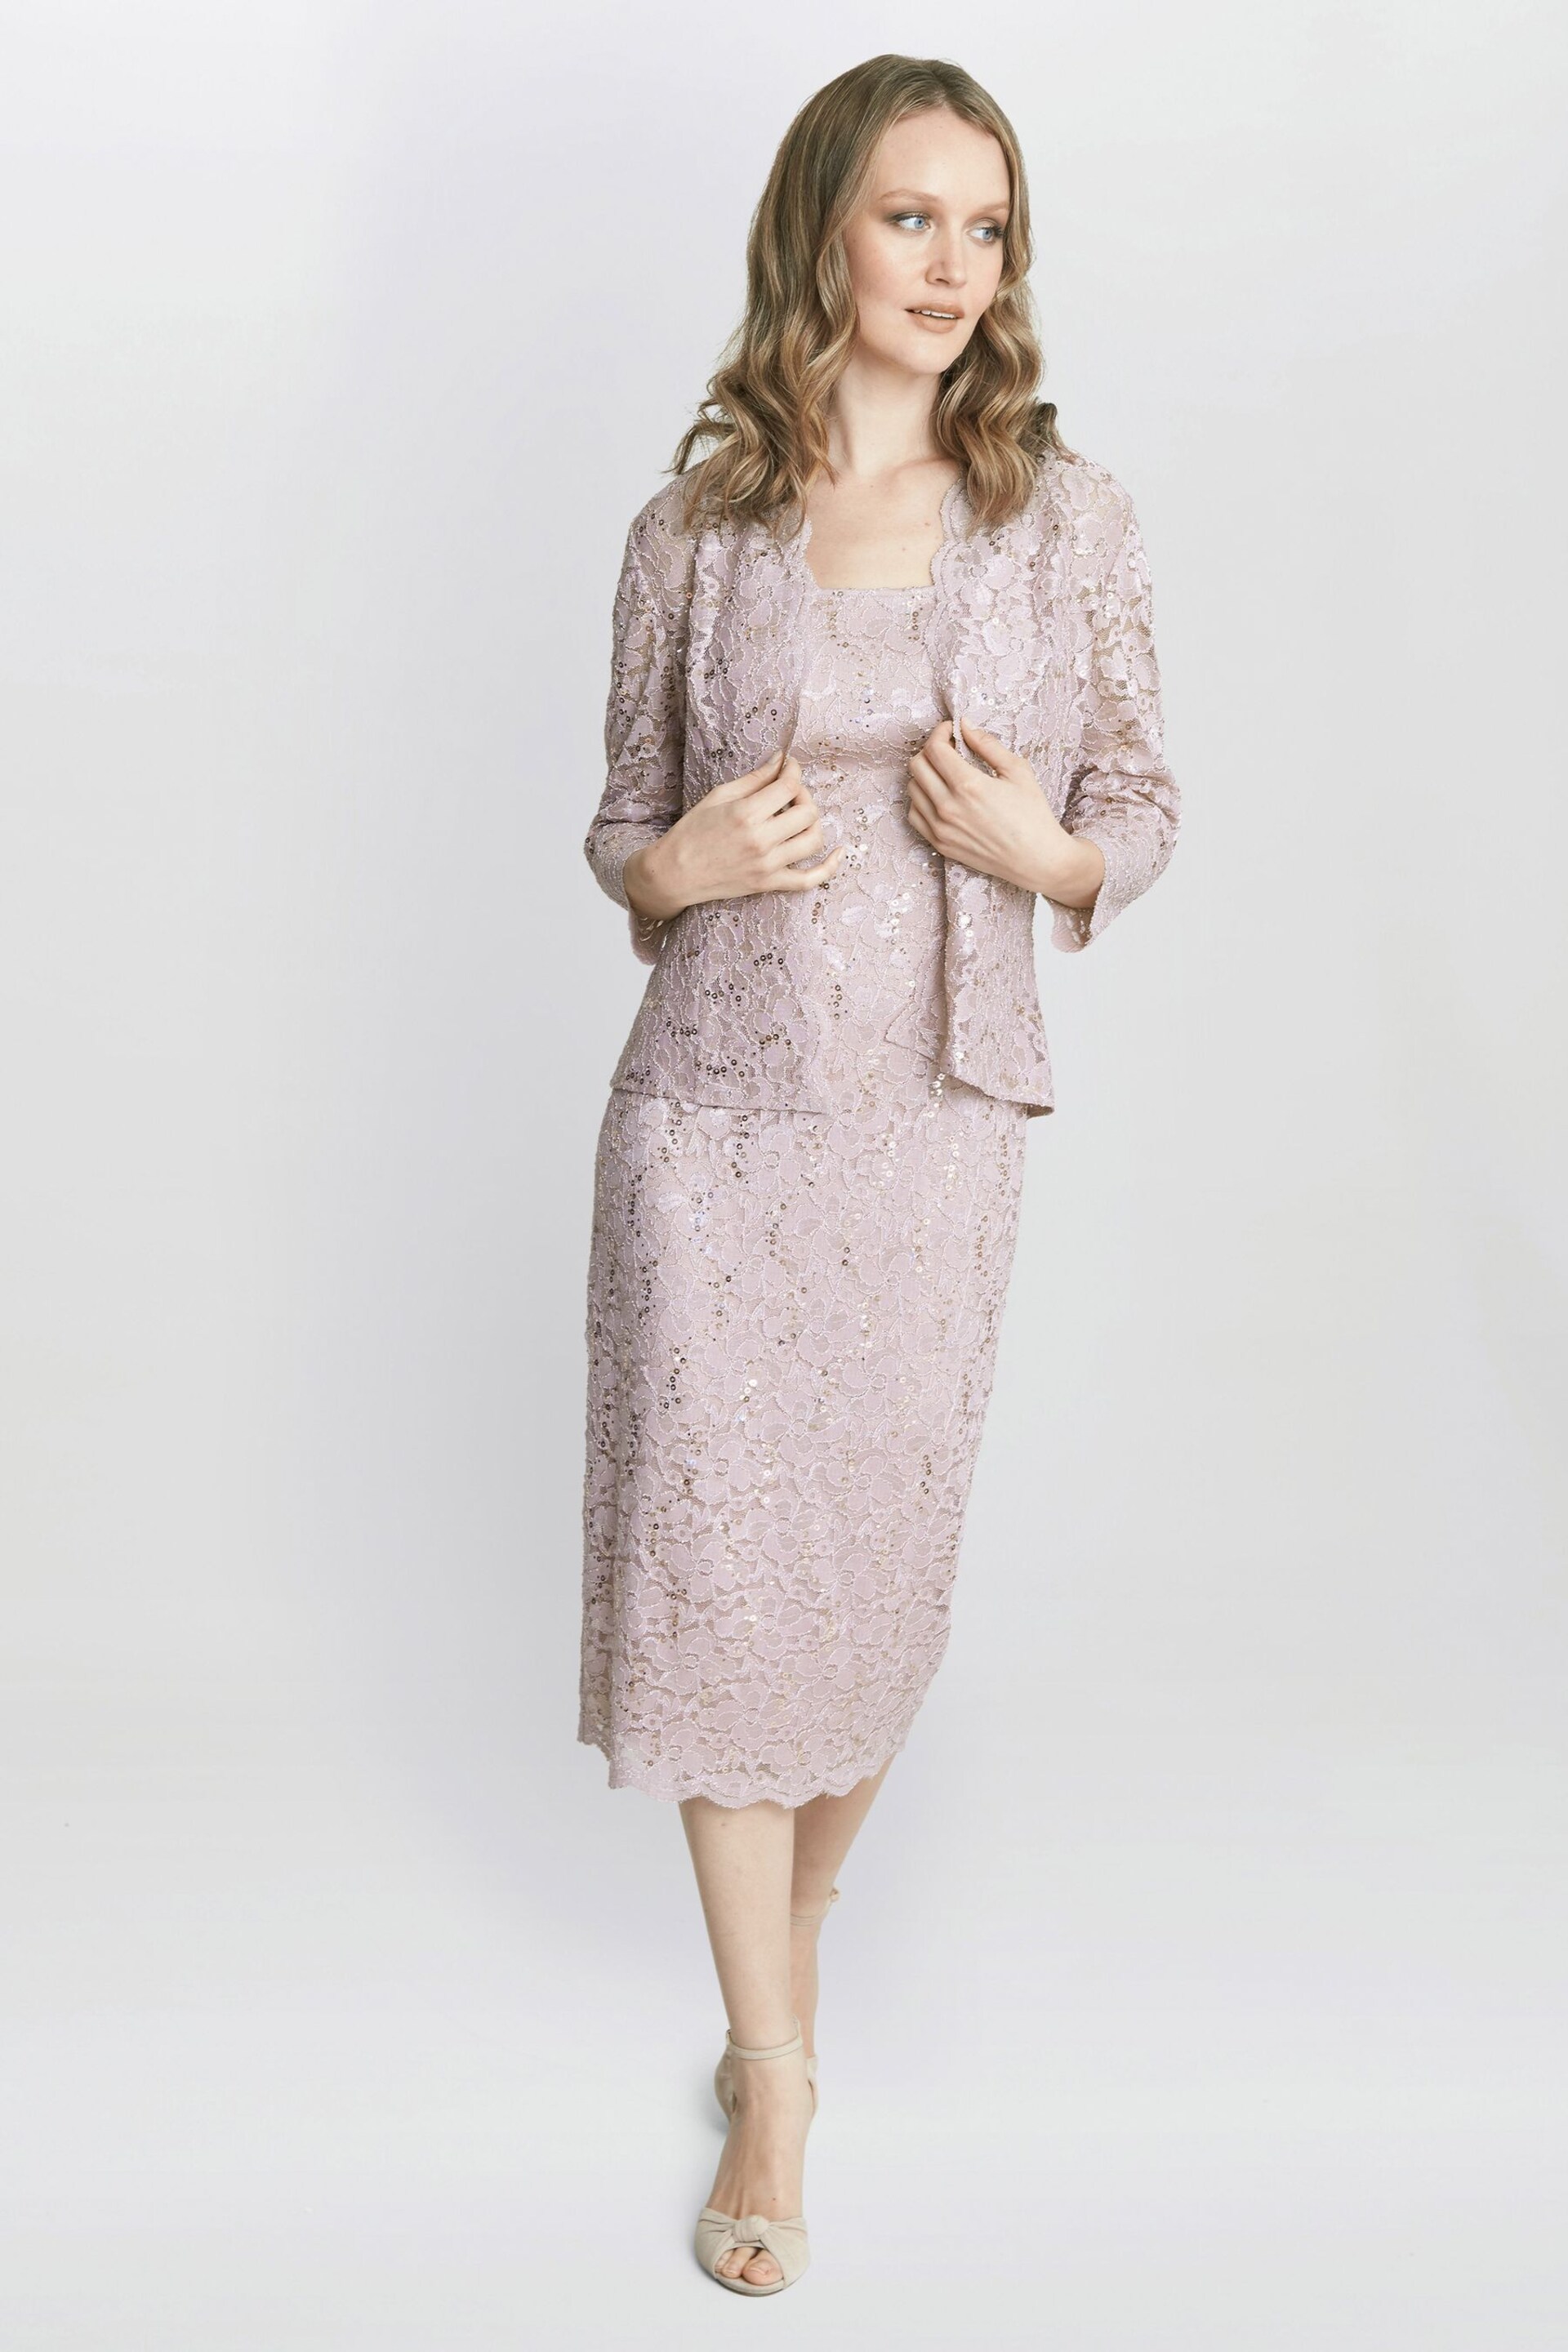 Gina Bacconi Pink Kayla Lace Midi-Length Jacket And Dress - Image 3 of 6